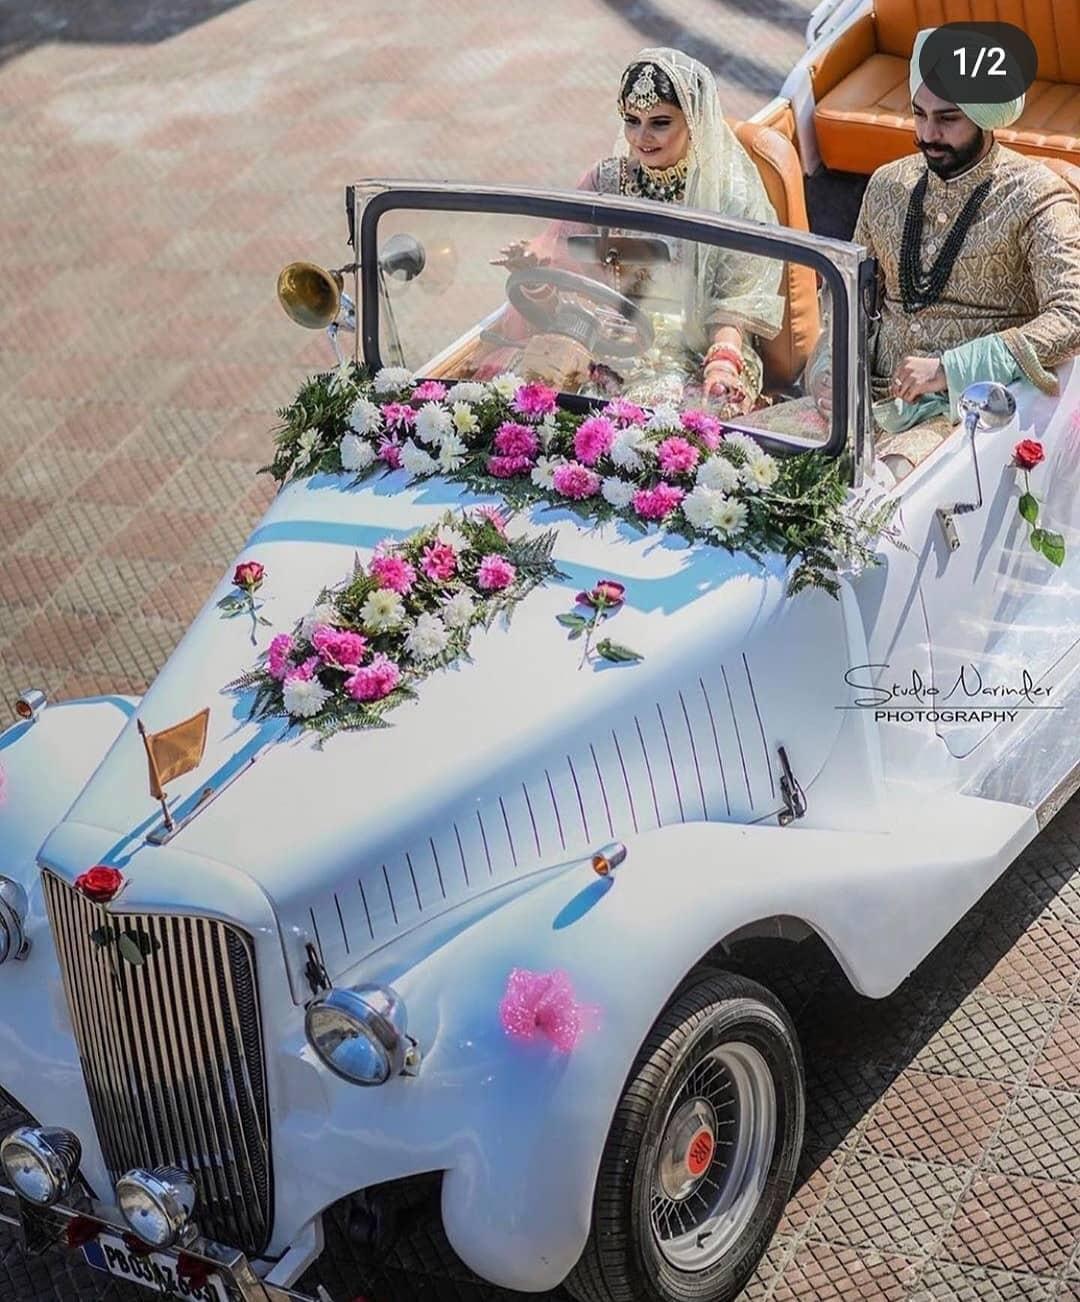 Beautiful Decorations For A Wedding Car. Wedding Organization